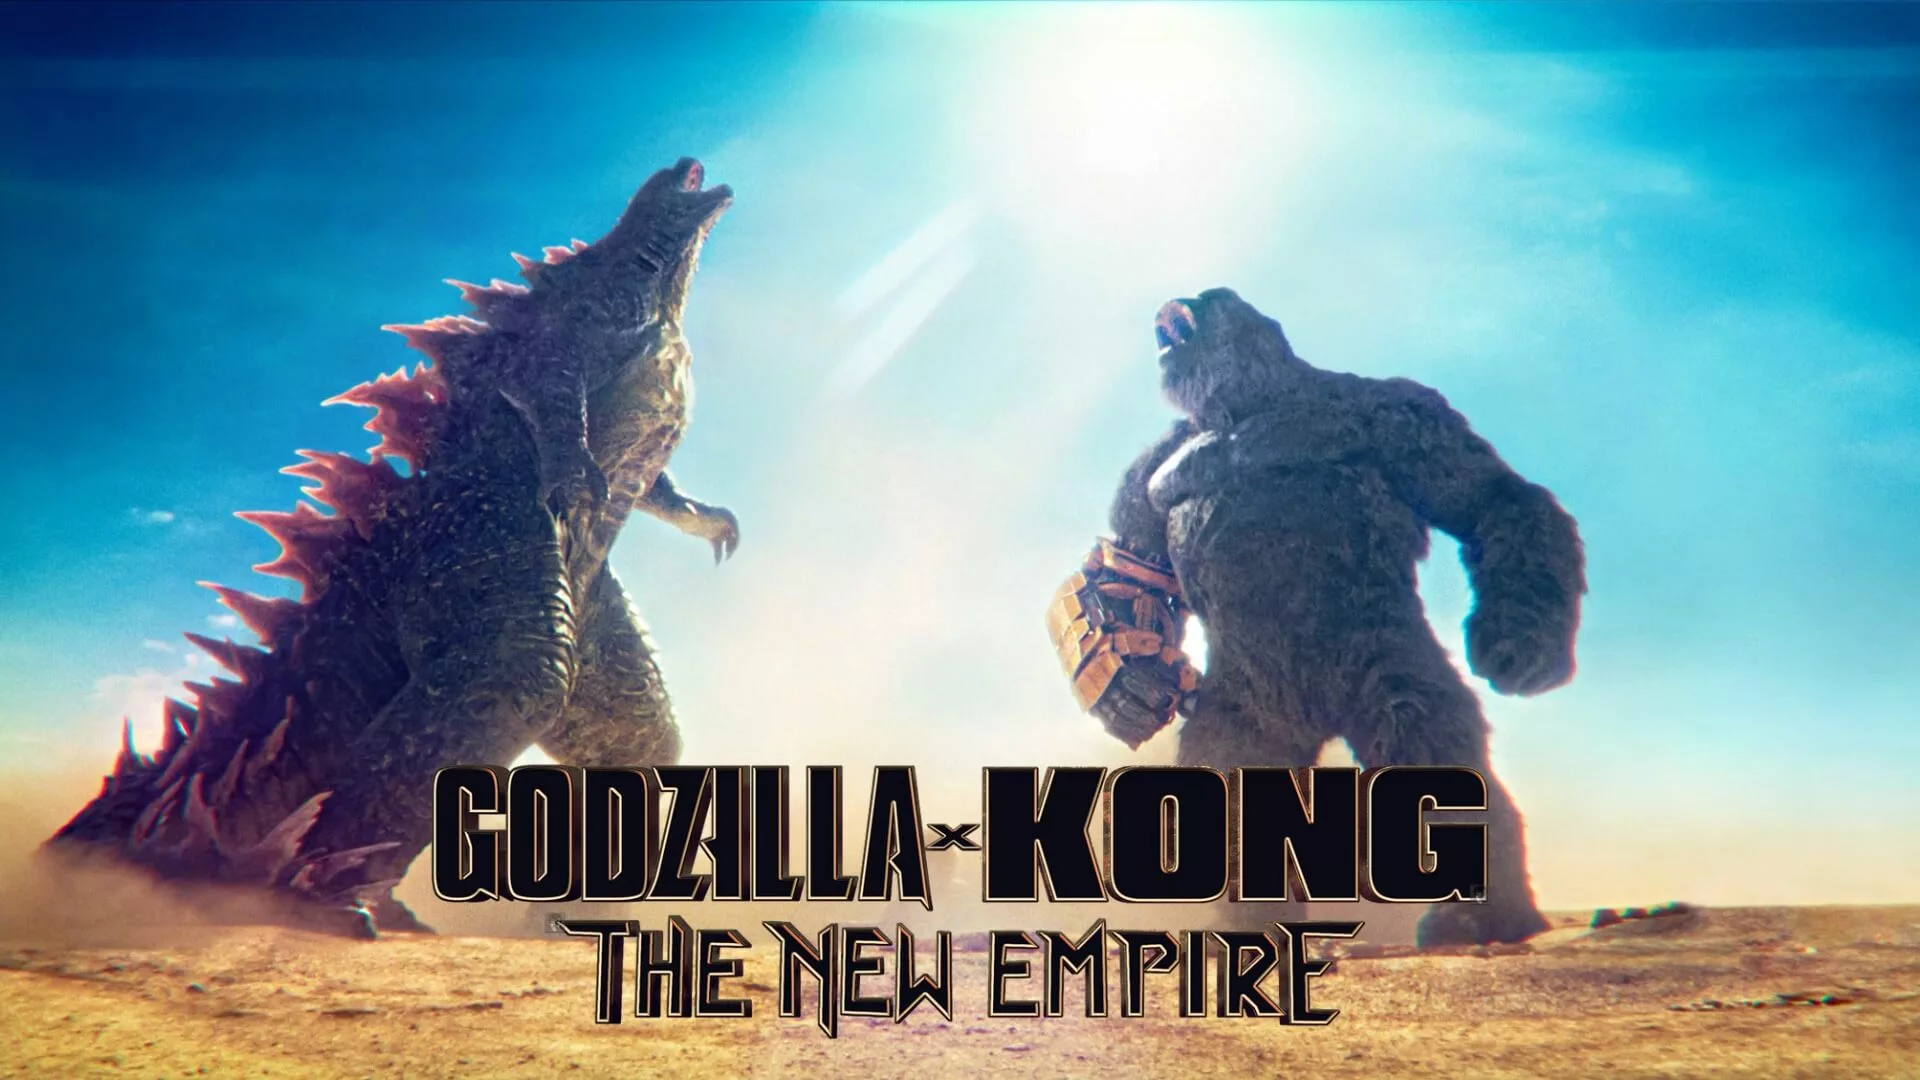 Warner invade Brasil com ações para promover “Godzilla e Kong: O Novo Império”